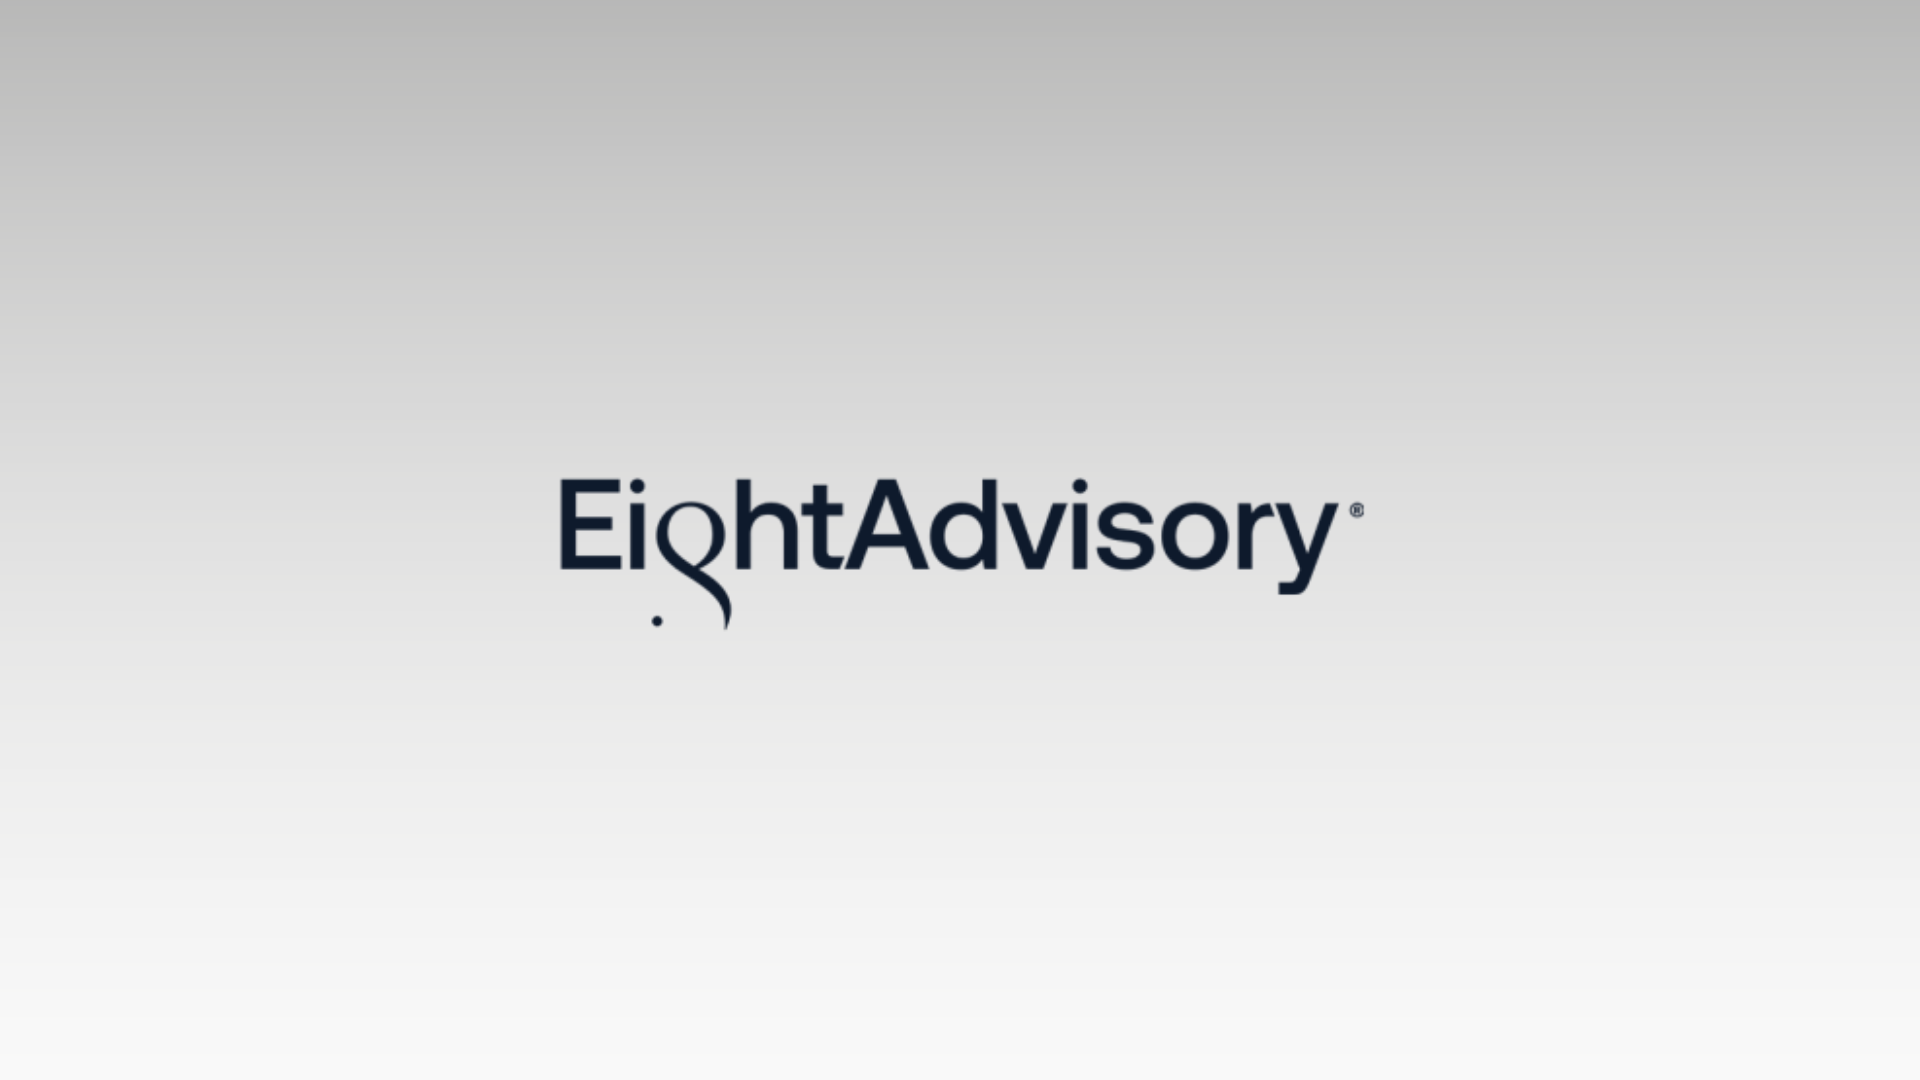 Eight Advisory étend sa présence internationale avec l'ouverture de son bureau aux États-Unis